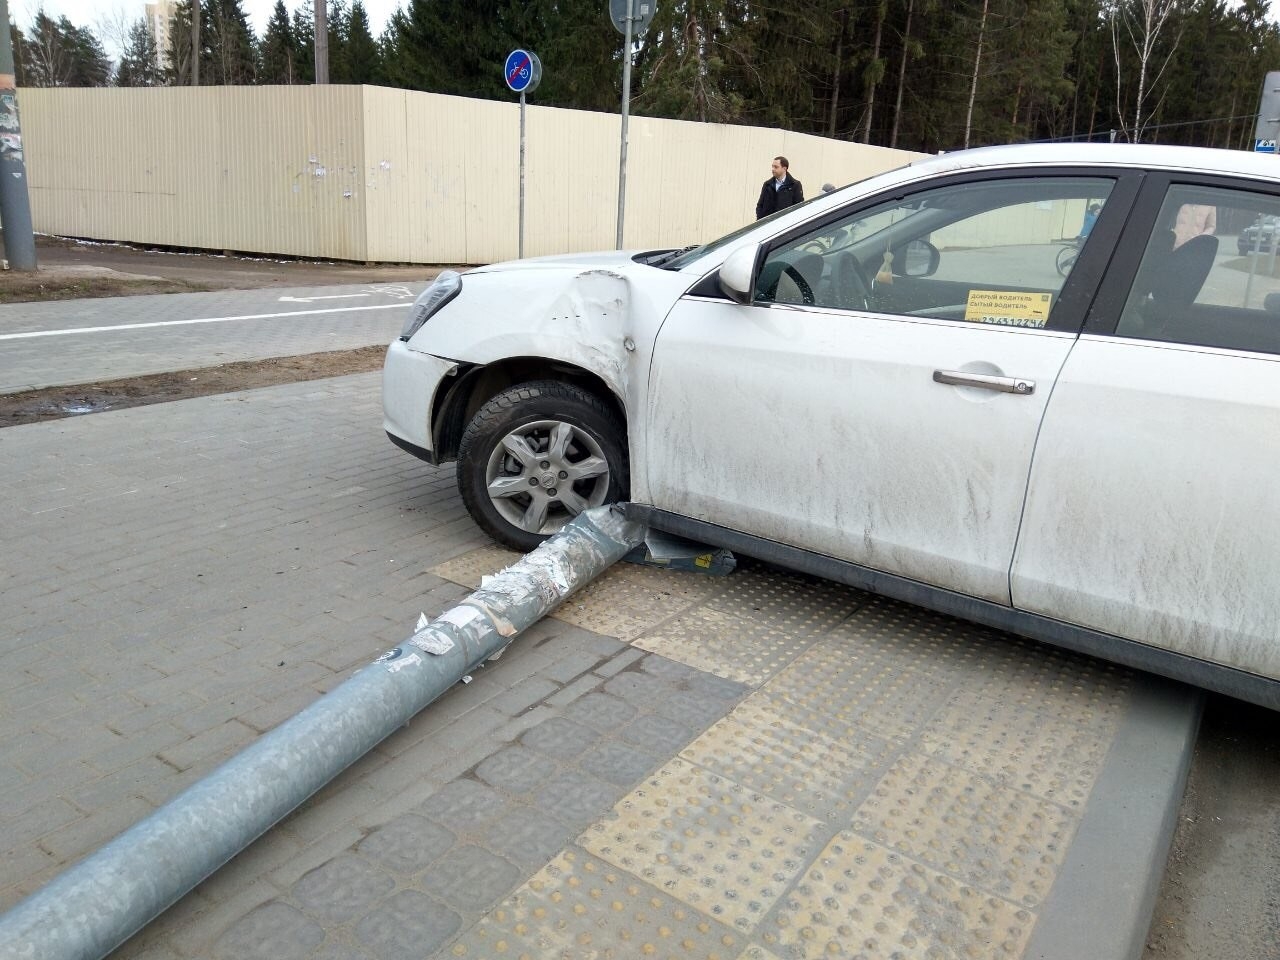 Администрация заплатит более 170 тысяч рублей за упавший на машину столб